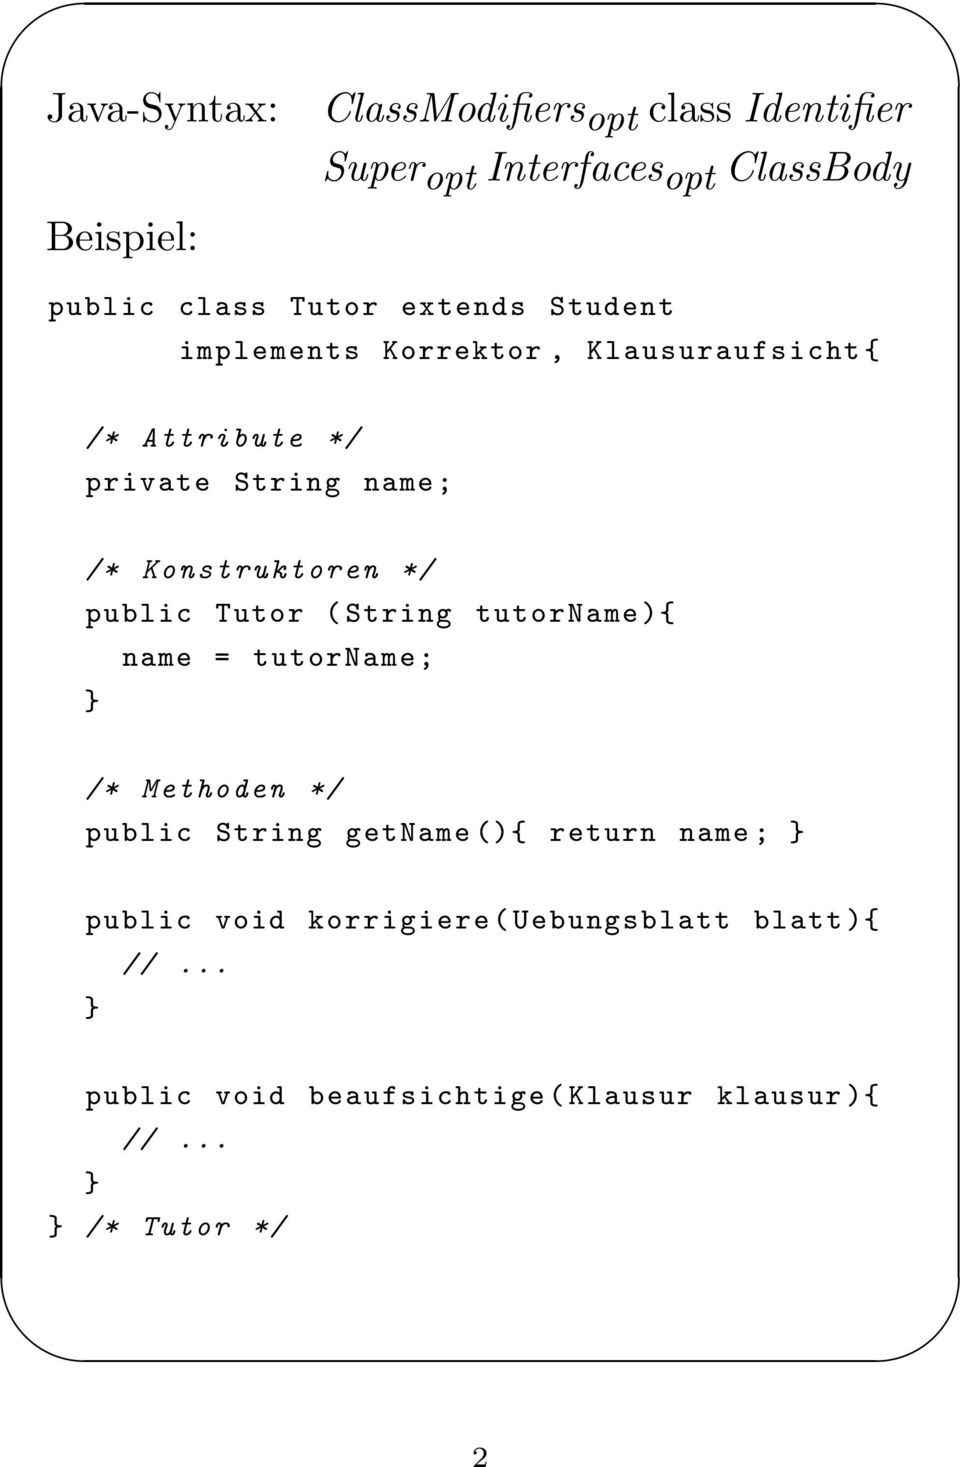 public Tutor ( String tutorname ){ name = tutorname; /* Methoden */ public String getname (){ return name ;